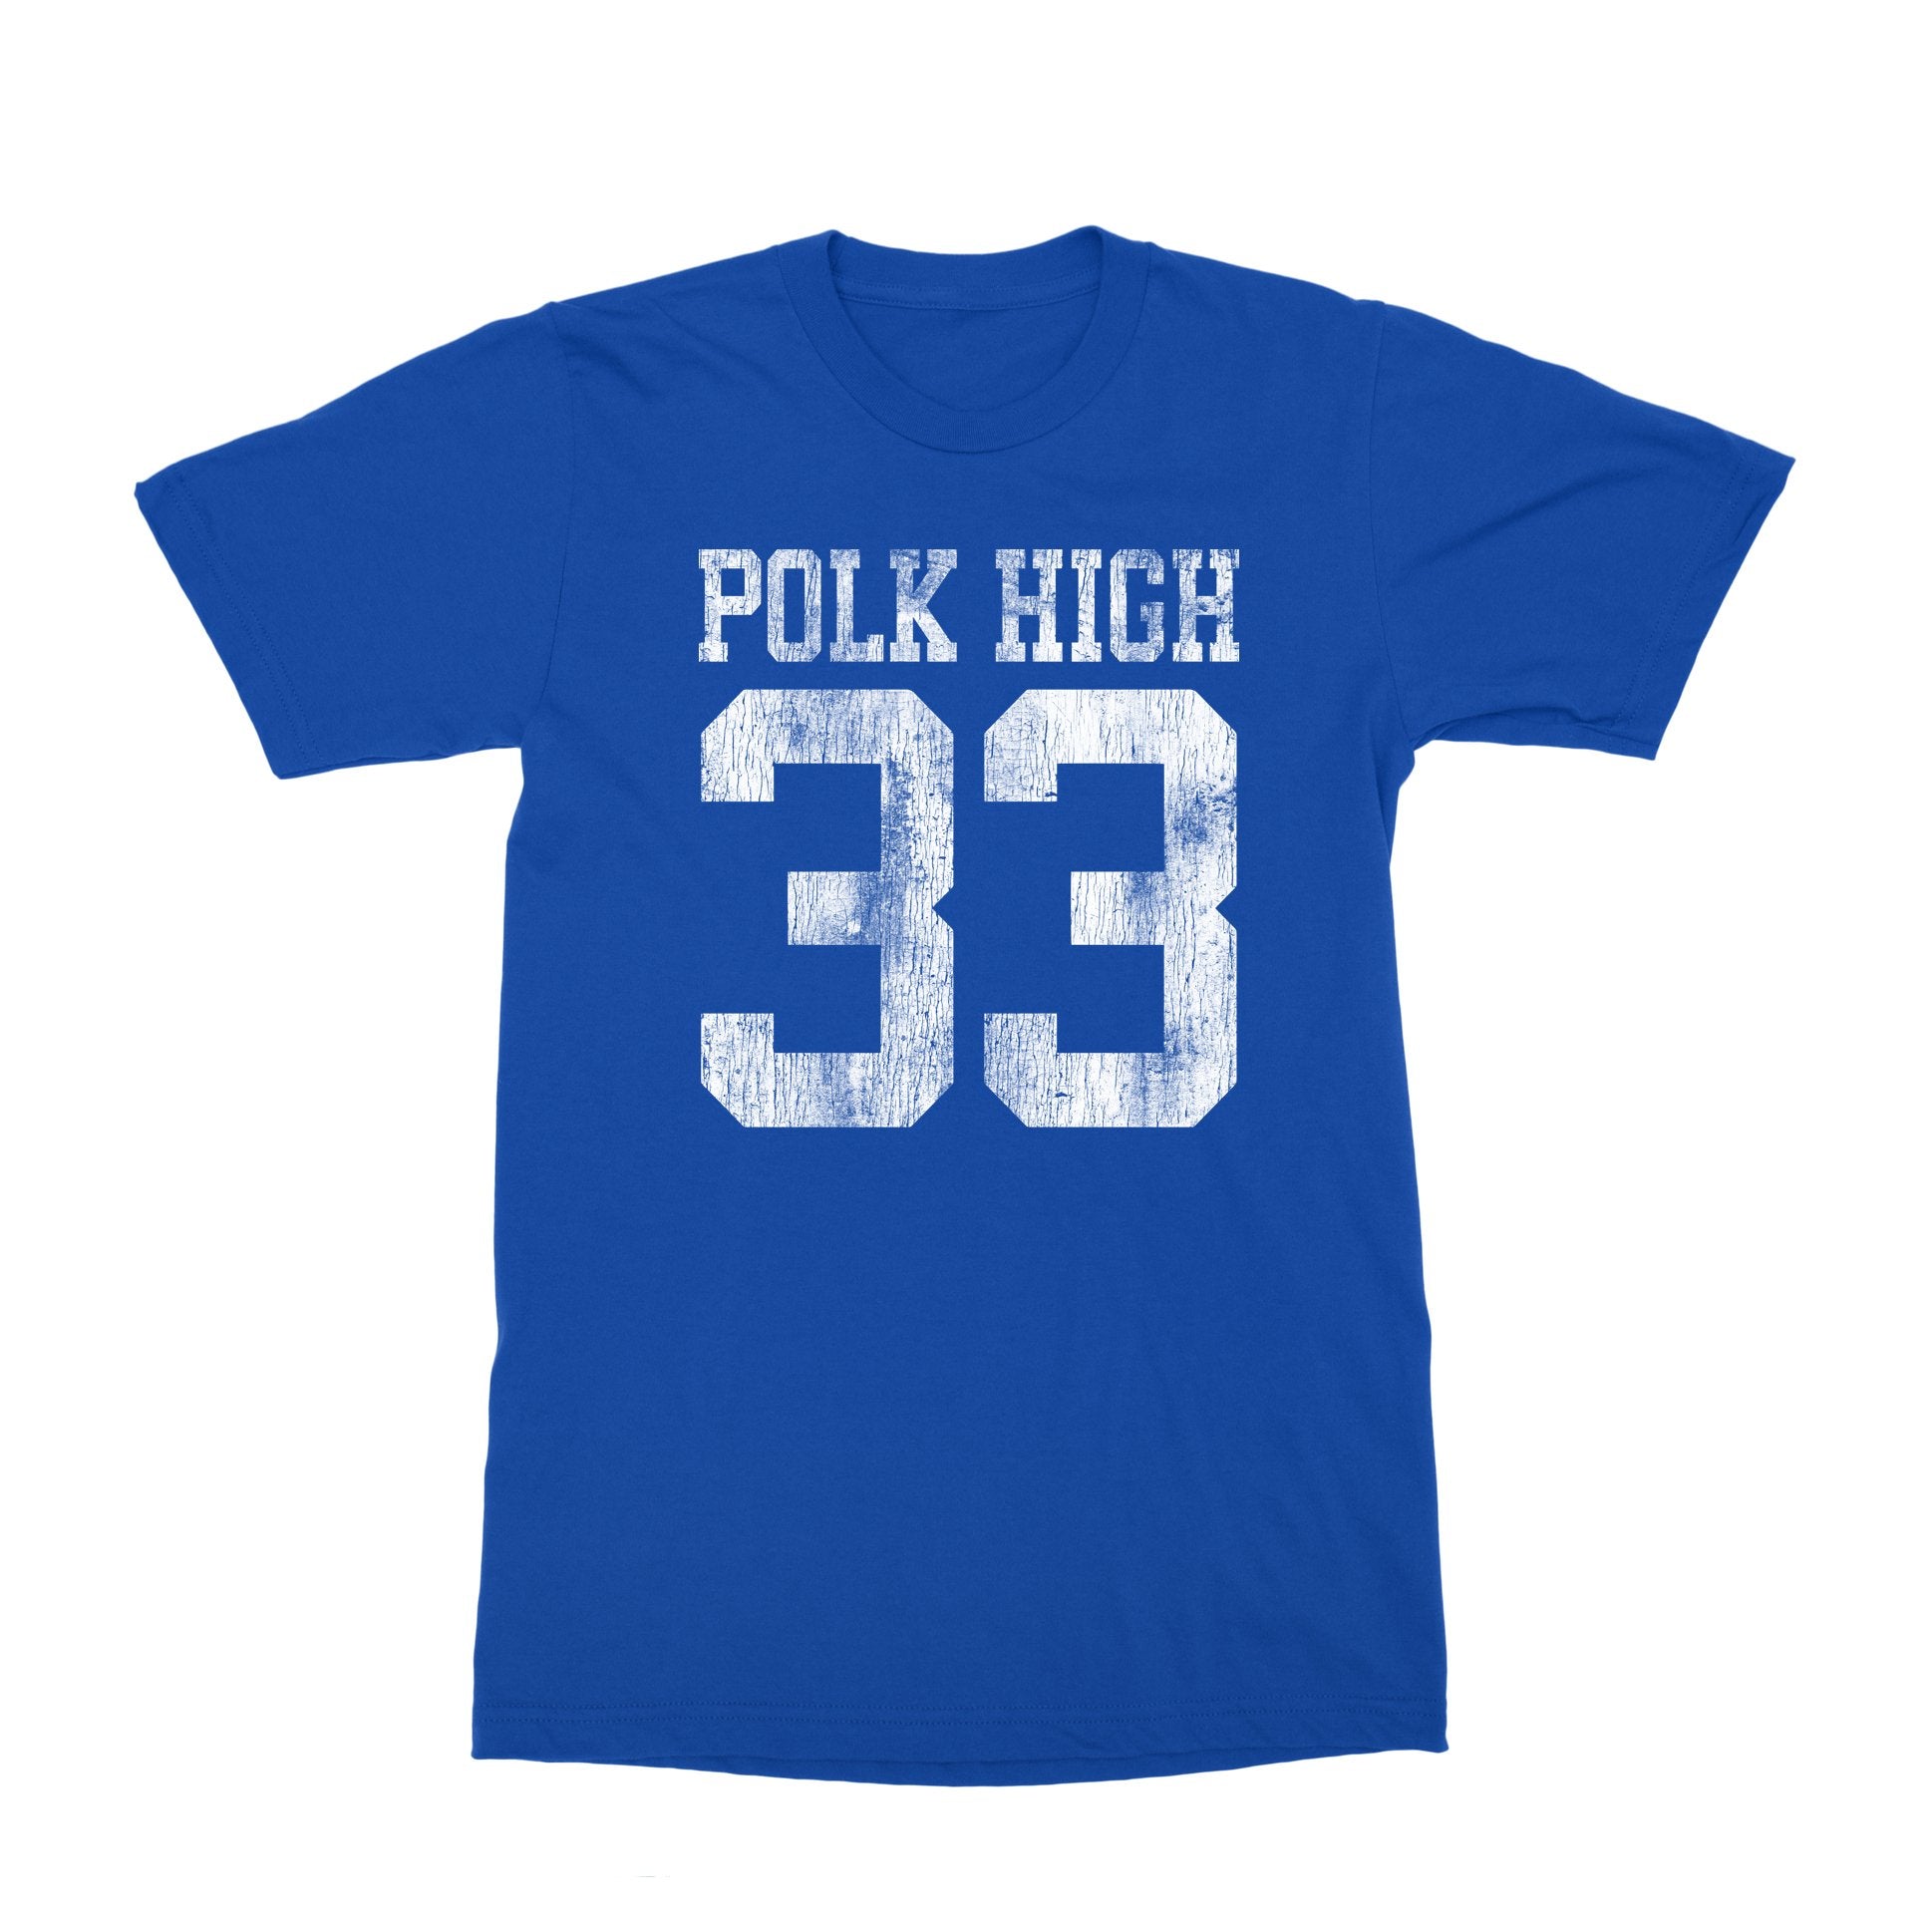 Polk High T-Shirt - Black Cat MFG -